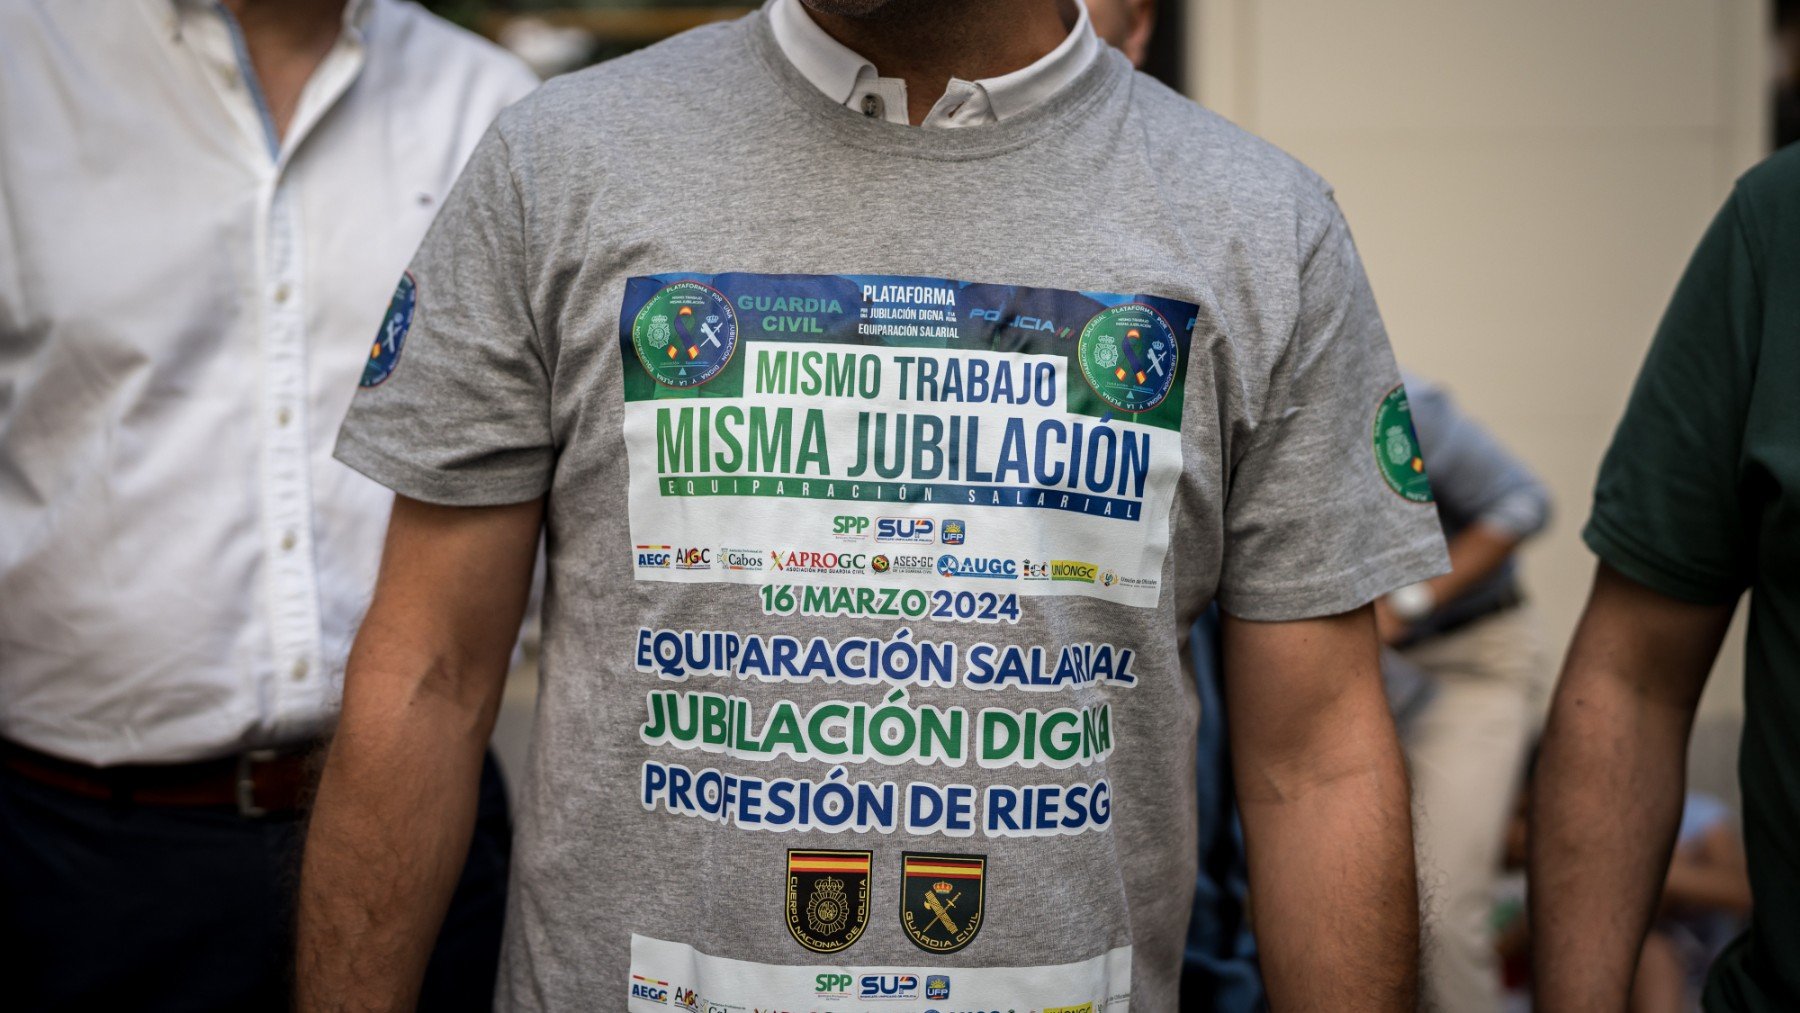 Un manifestante con una camiseta de la equiparación salarial y jubilación digna. (EP)